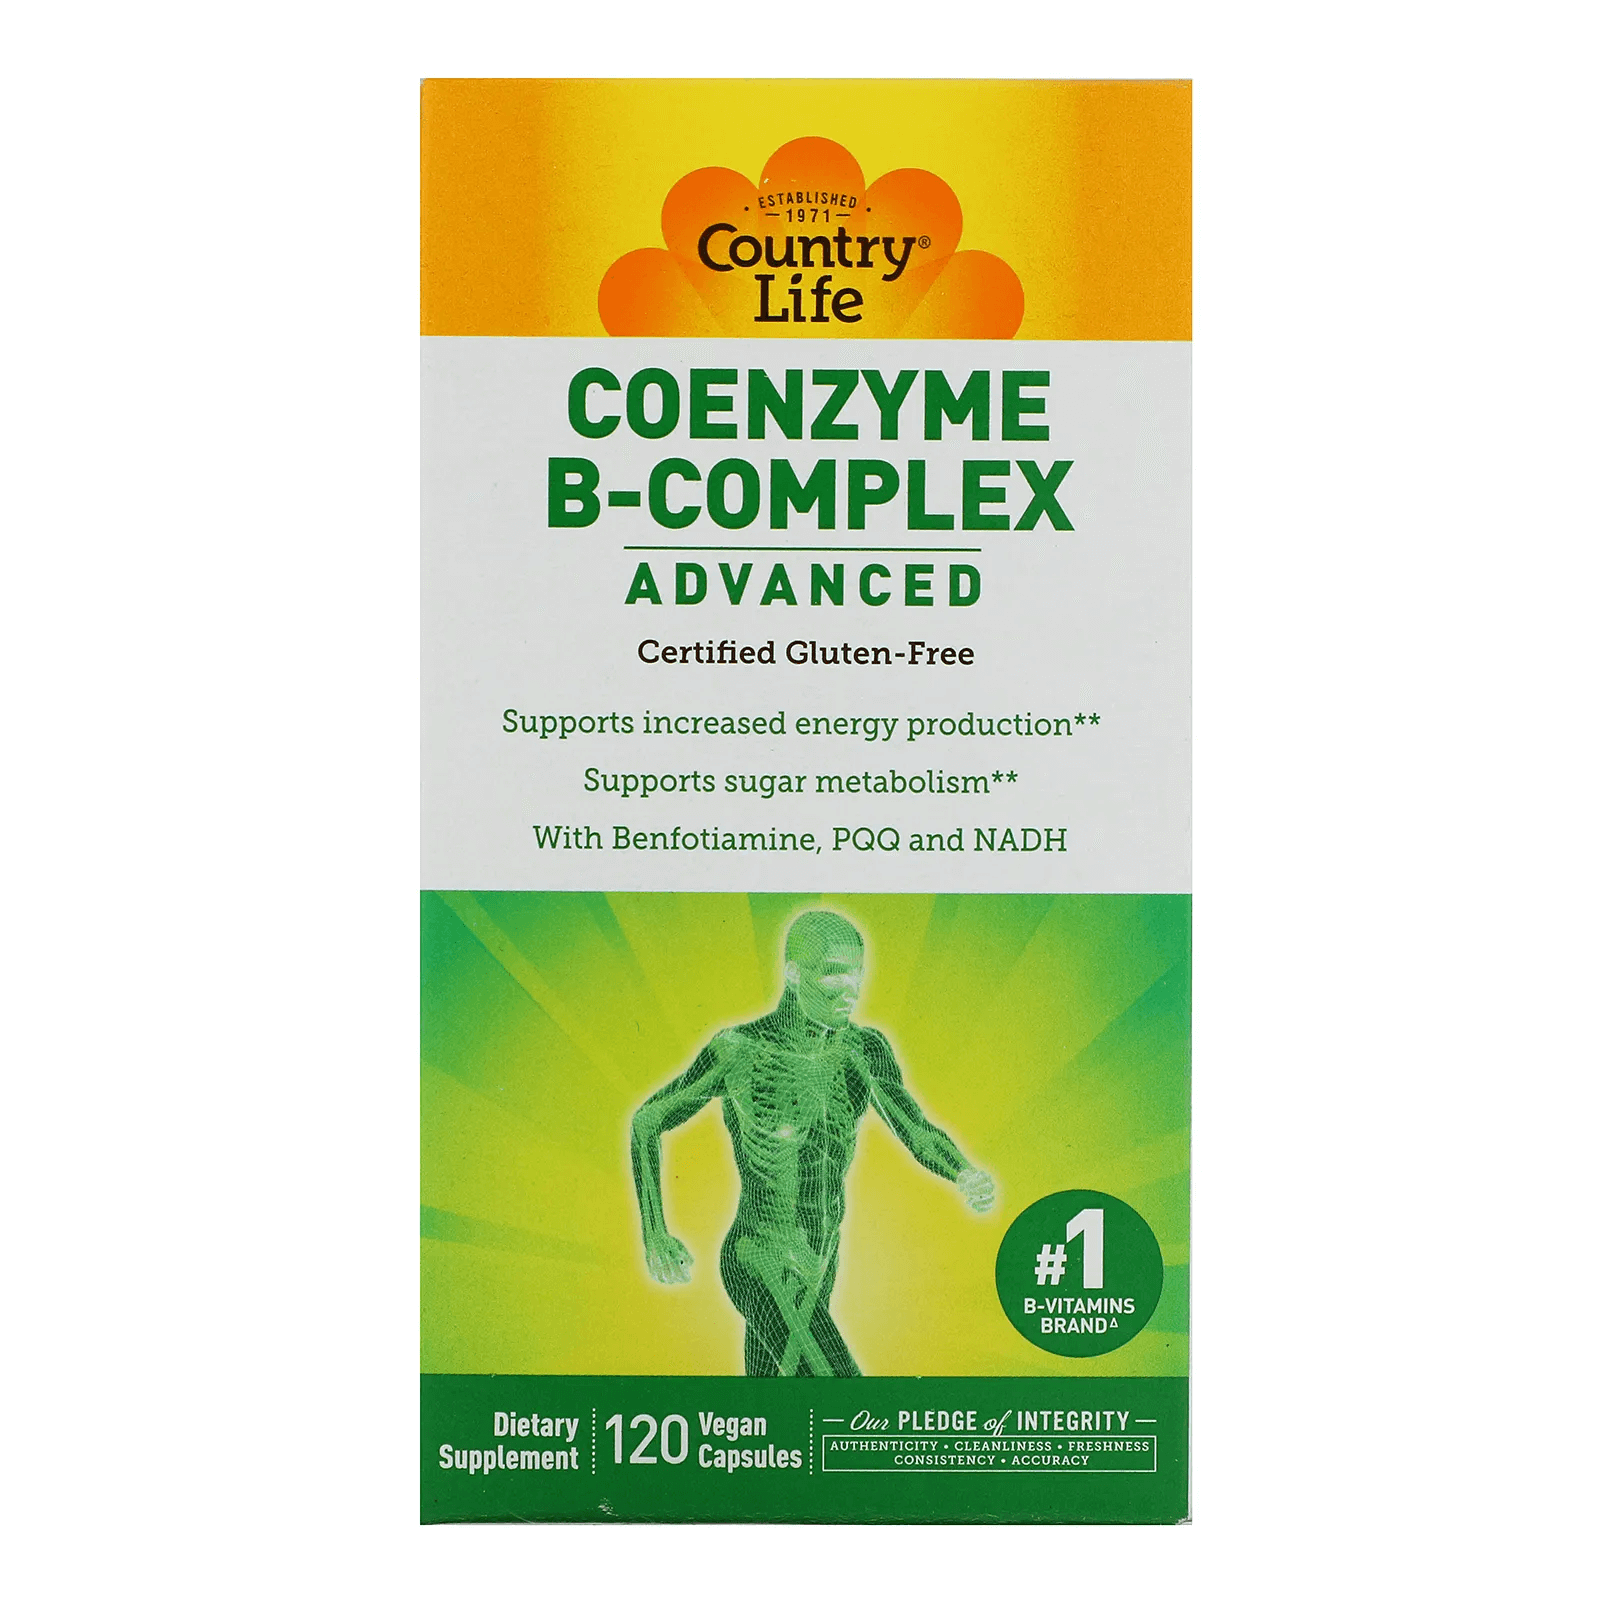 Коэнзим B-комплекс улучшенный, Country Life, 120 растительных капсул комплекс коэнзимов группы b country life 120 растительных капсул